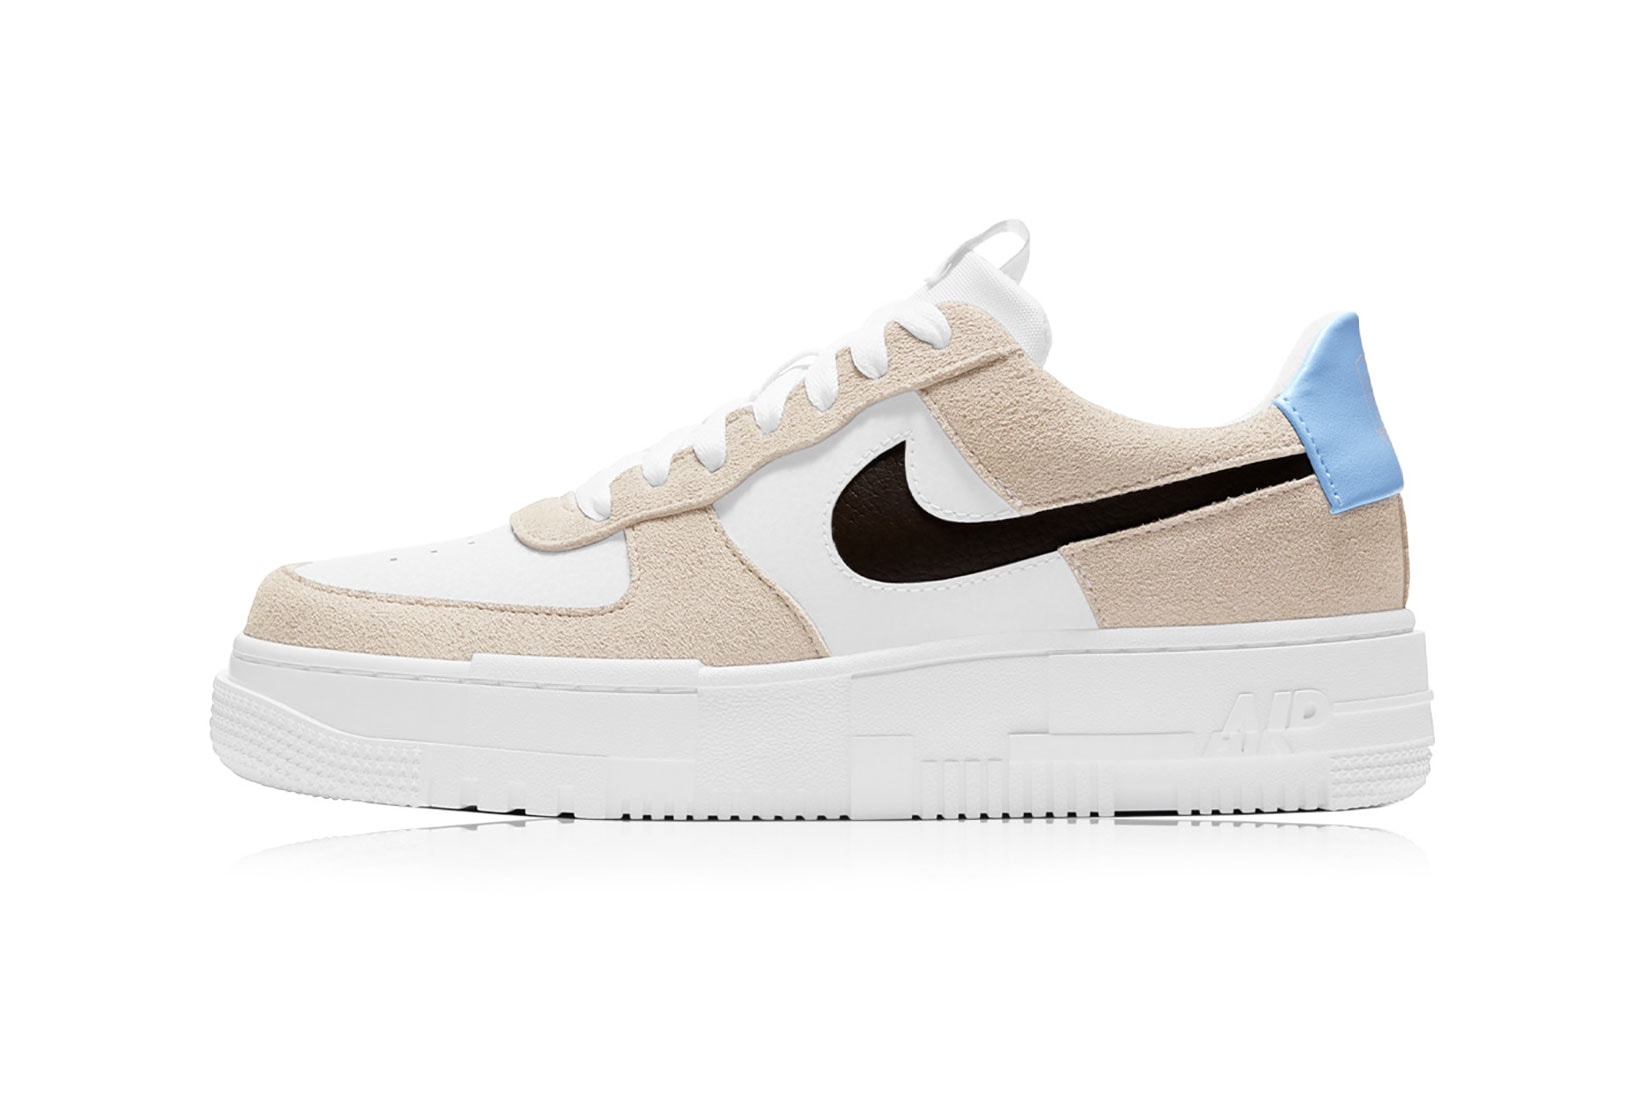 nike air force 1 pixel womens sneakers desert sand beige white blue black colorway sneakerhead footwear shoes